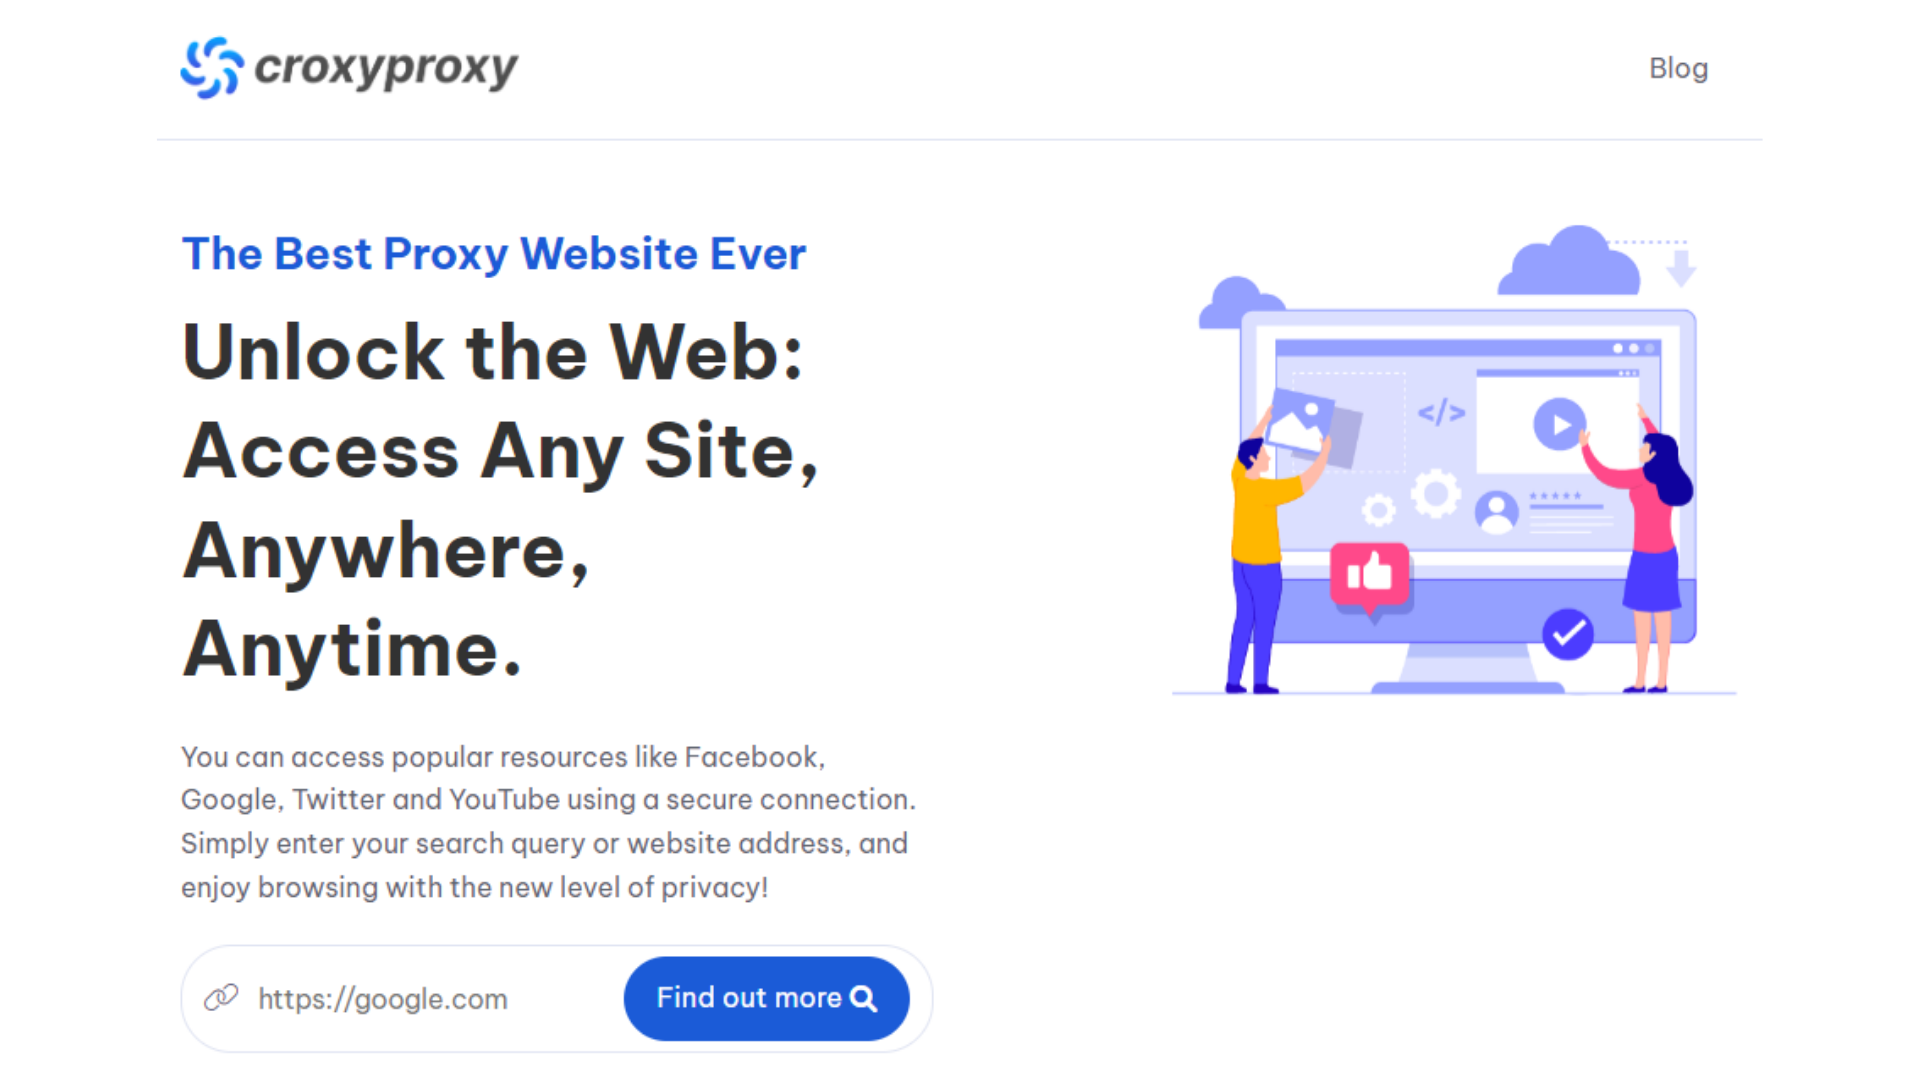 Croxyproxys website